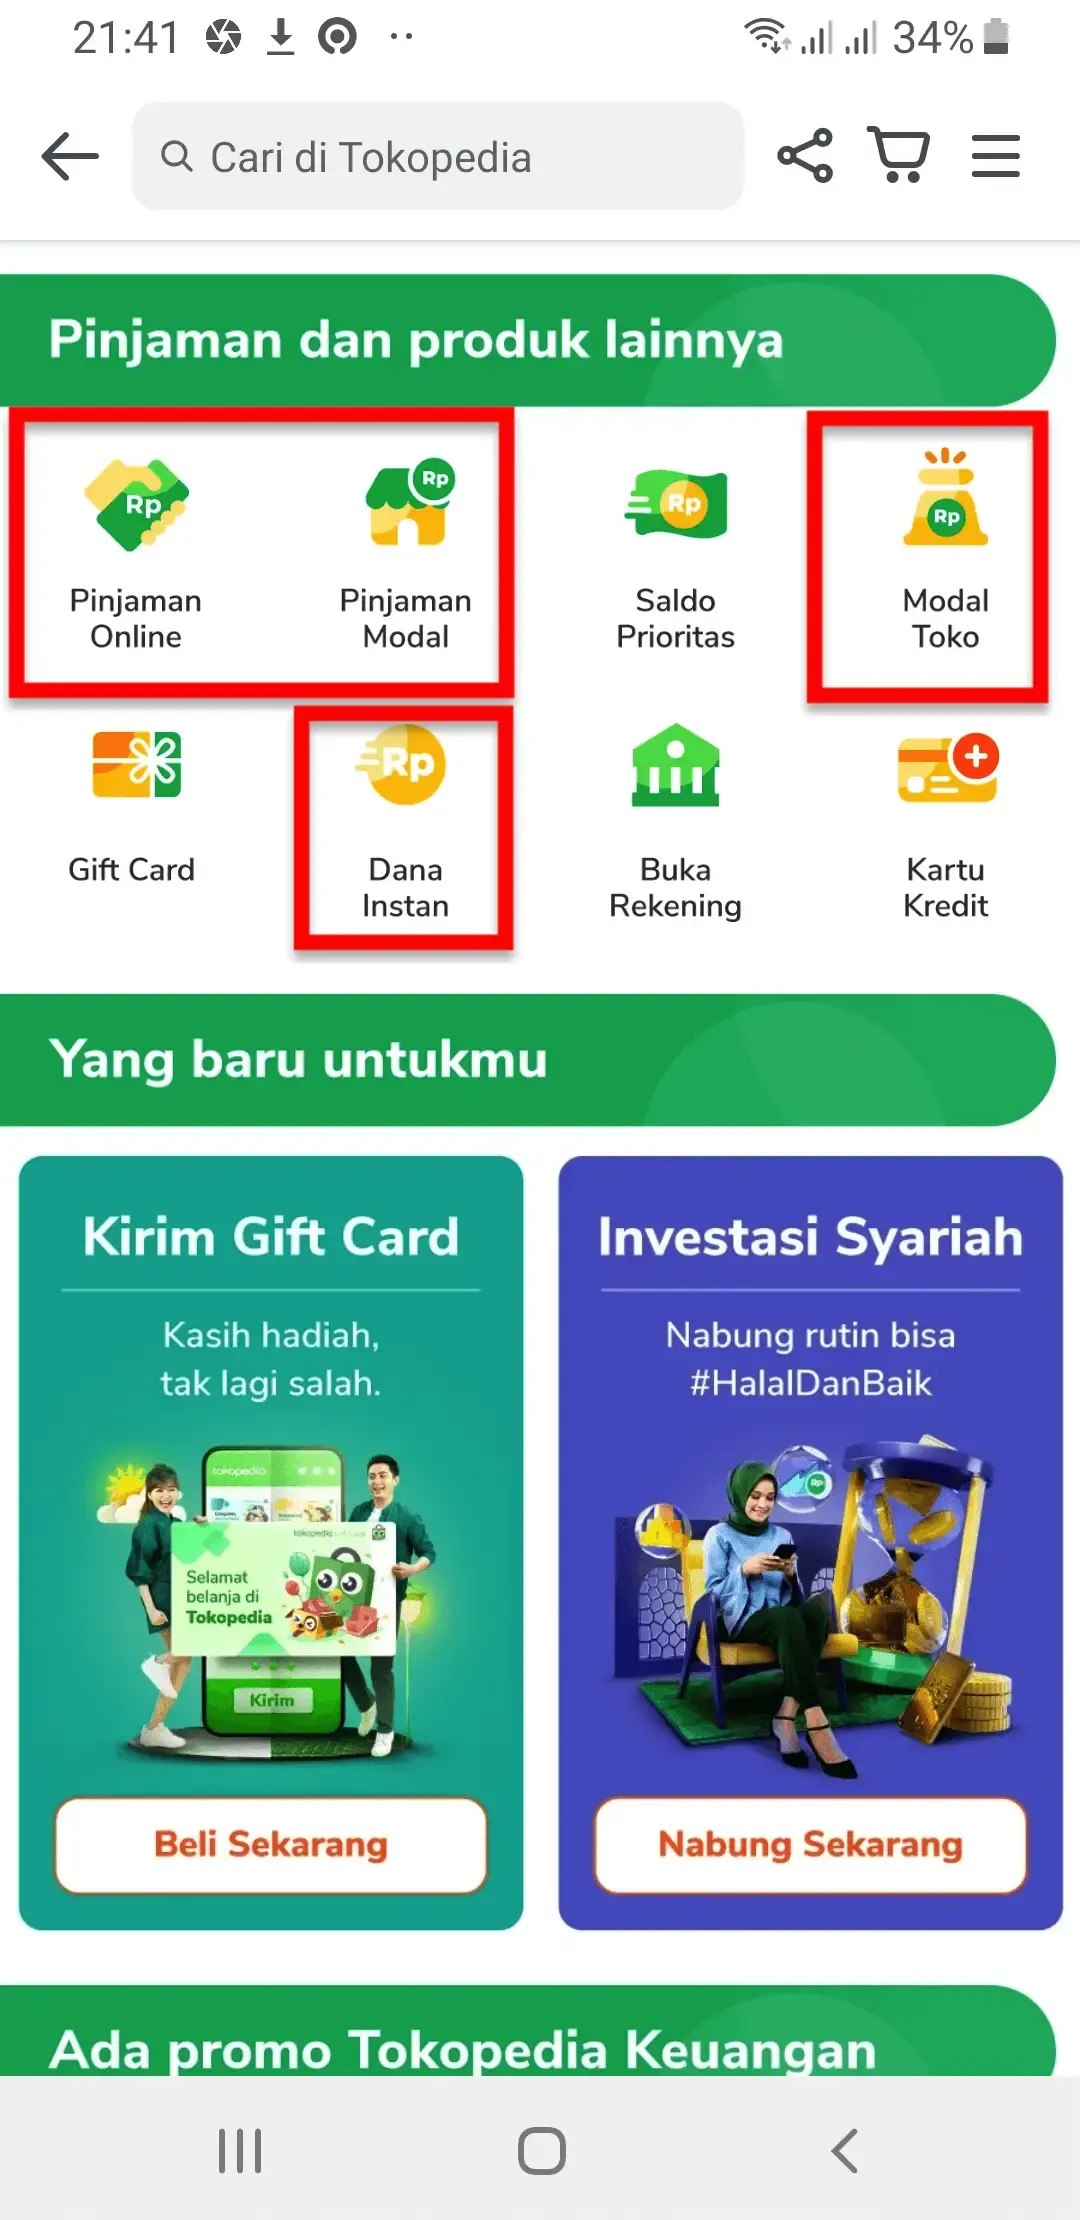 Pinjaman Online Dana Instan